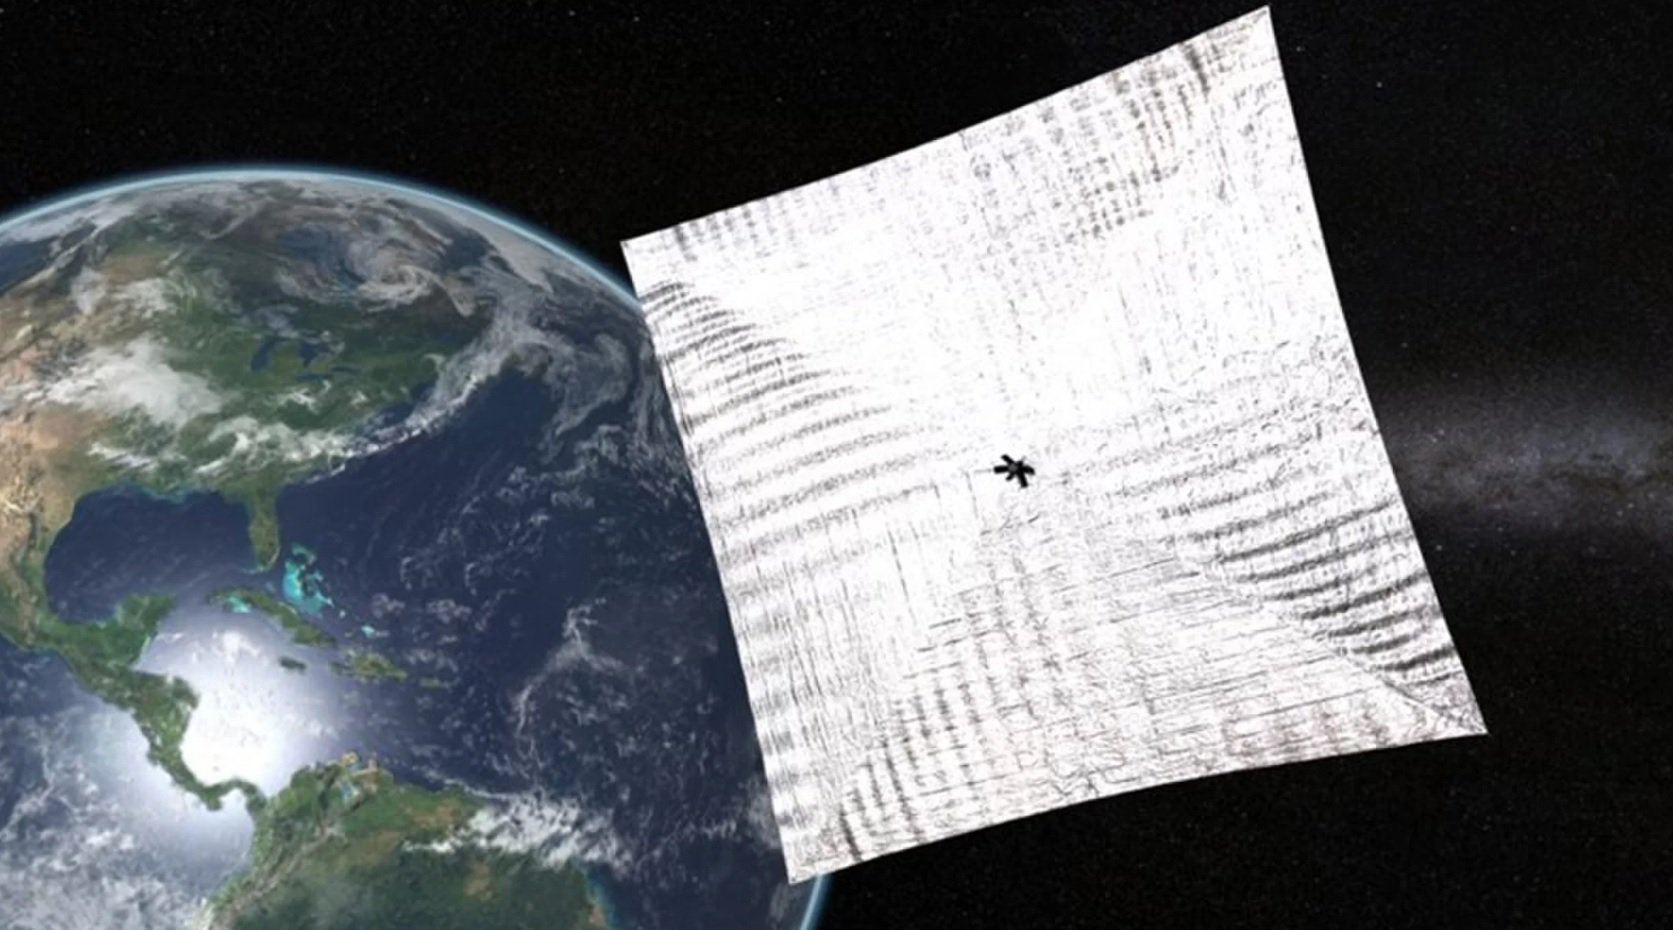 Uruchomienie słonecznego żagle 2.0 na orbitę odbędzie się latem tego roku